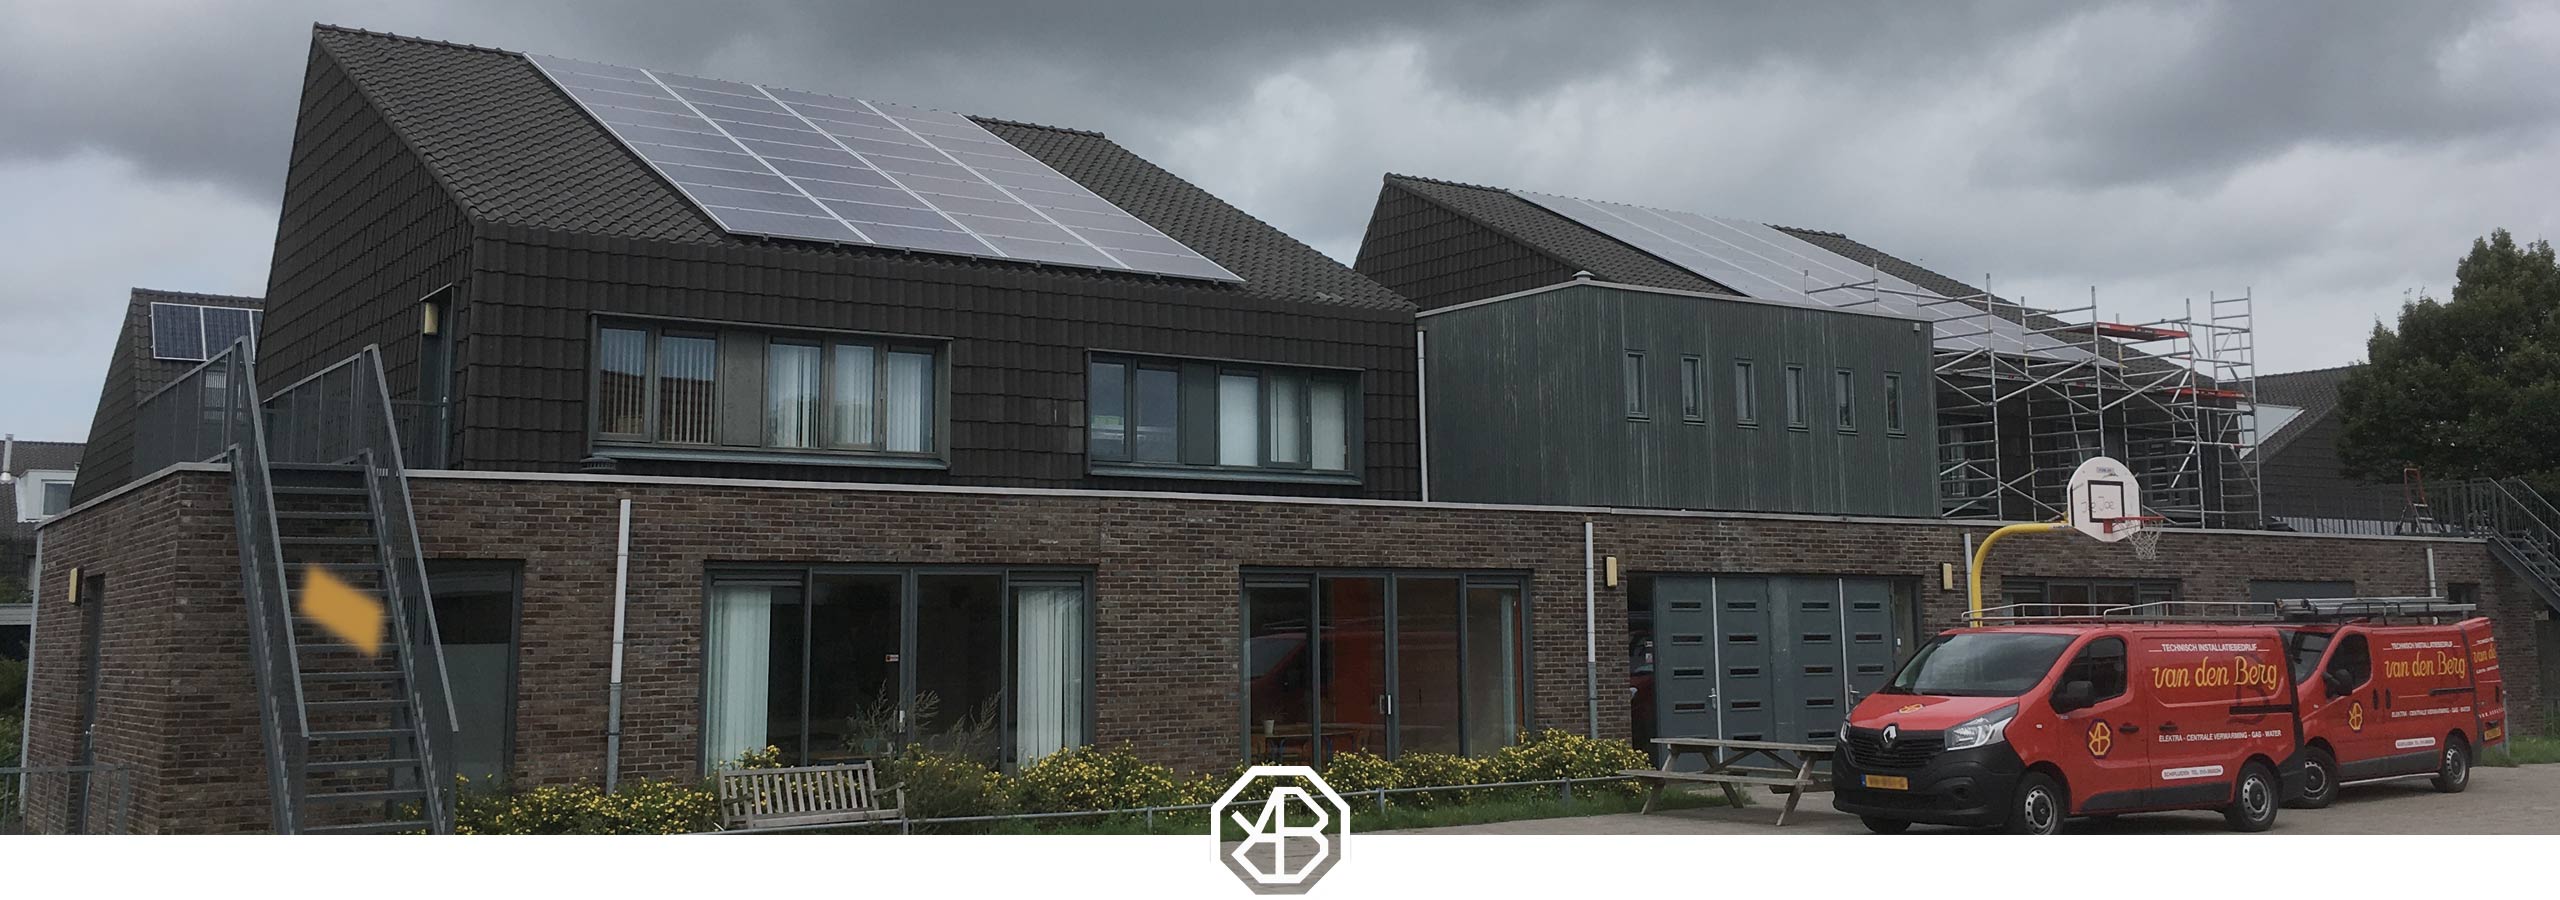 van-den-berg-webdesign-slides-2019-duurzaam-zonnepanelen-1